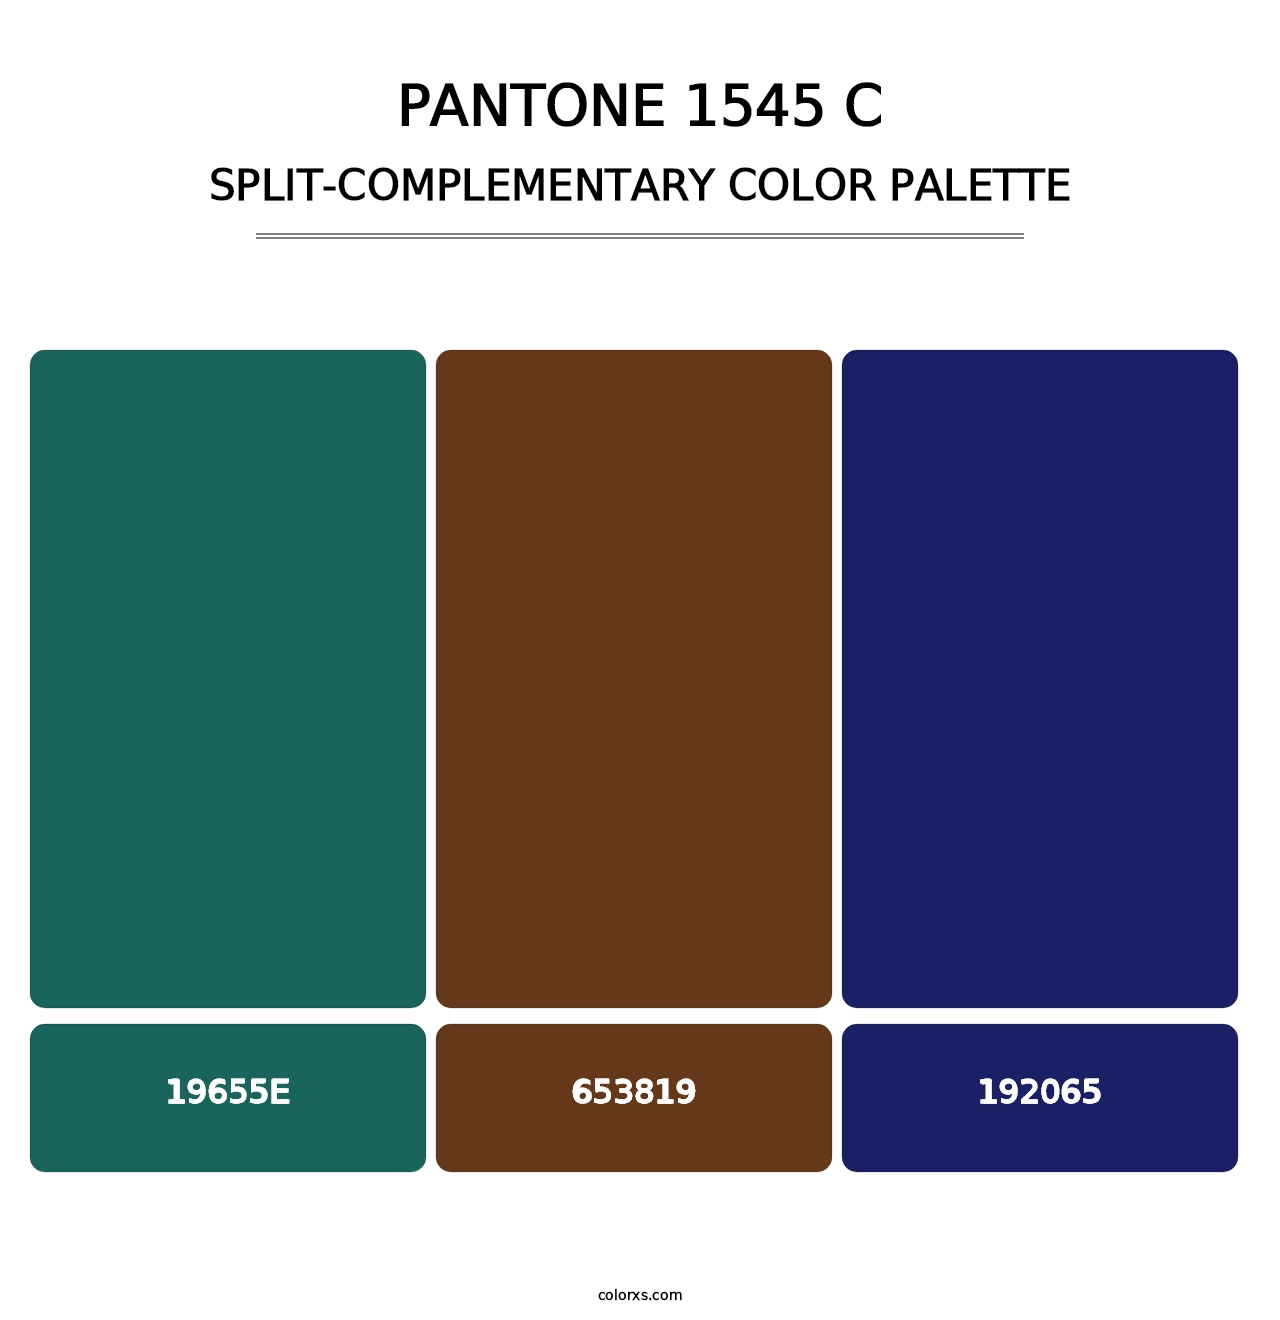 PANTONE 1545 C - Split-Complementary Color Palette